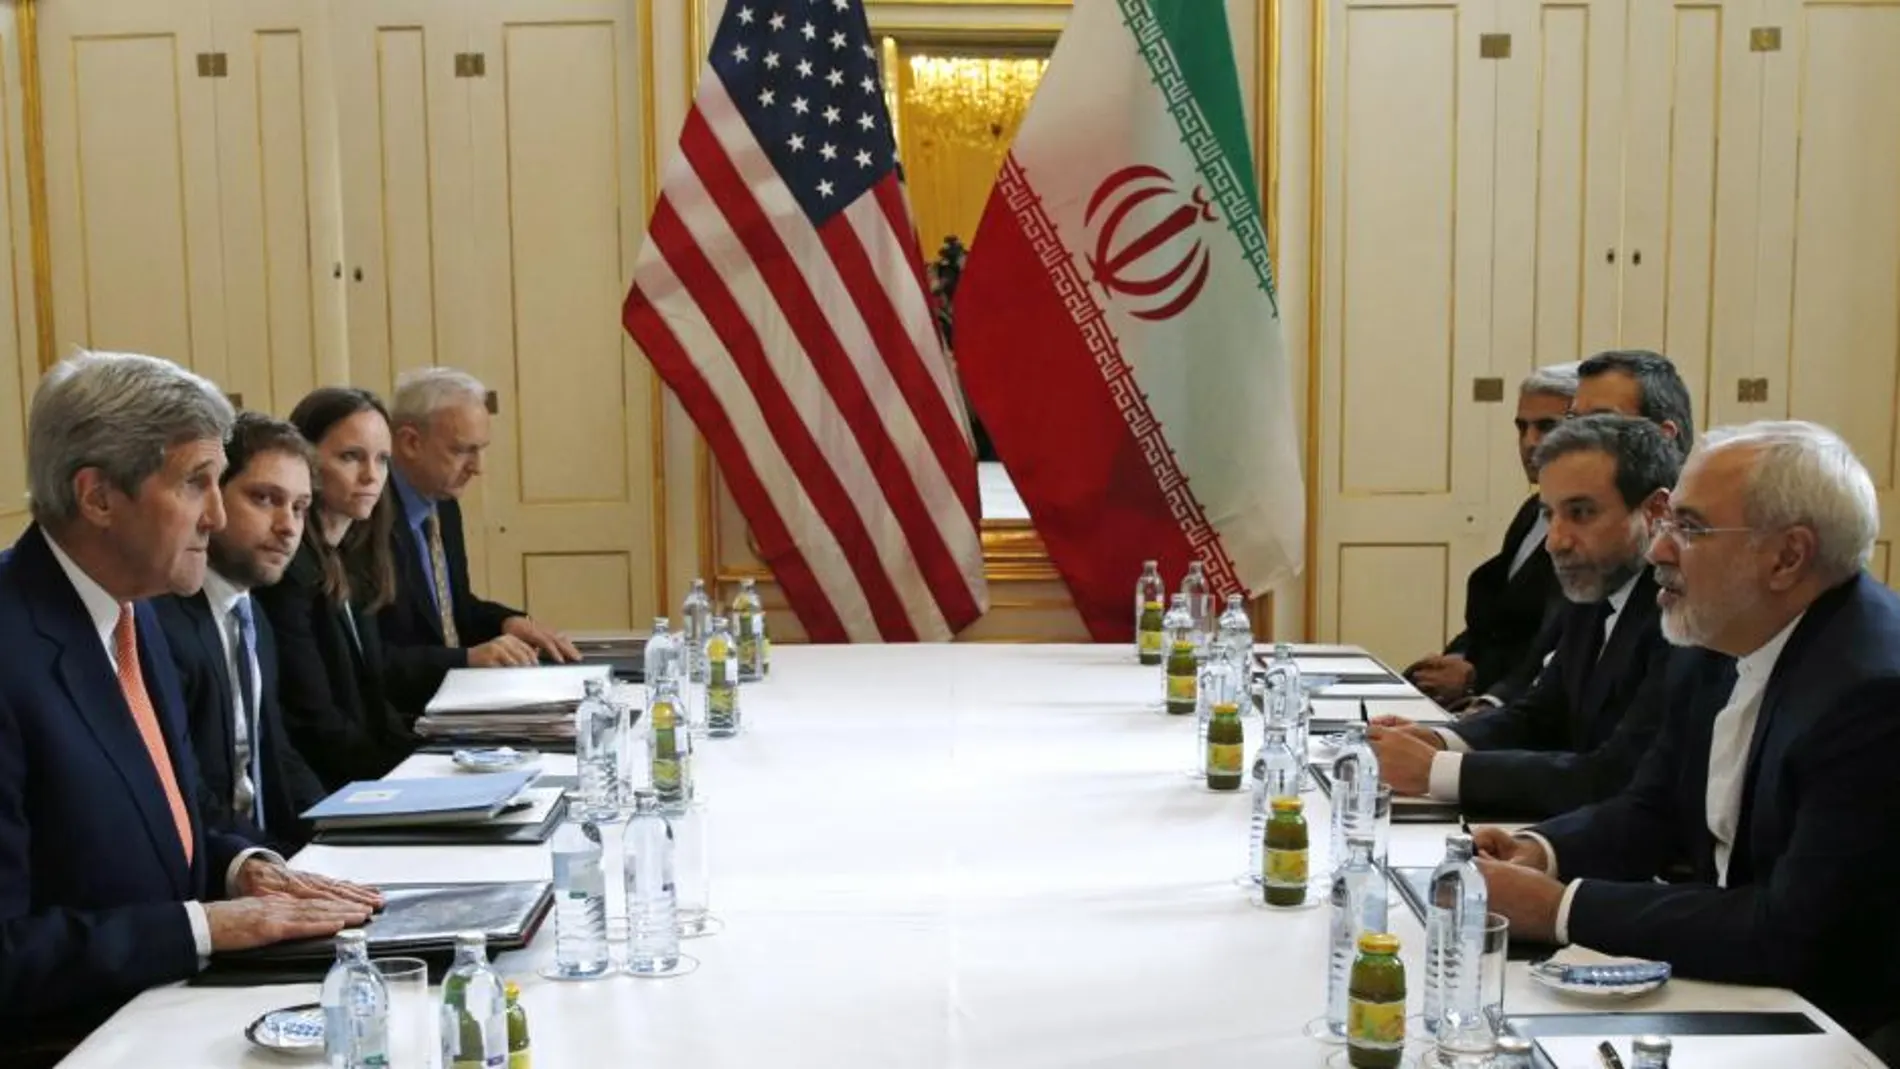 El Secretario de estado de EEUU, John Kerry, izquierda, durante la reunión con el ministro de Exteriores de Irán, Mohammad Javad Zarif, derecha, en la reunión de hoy en Viena a la espera del informe del OIEA